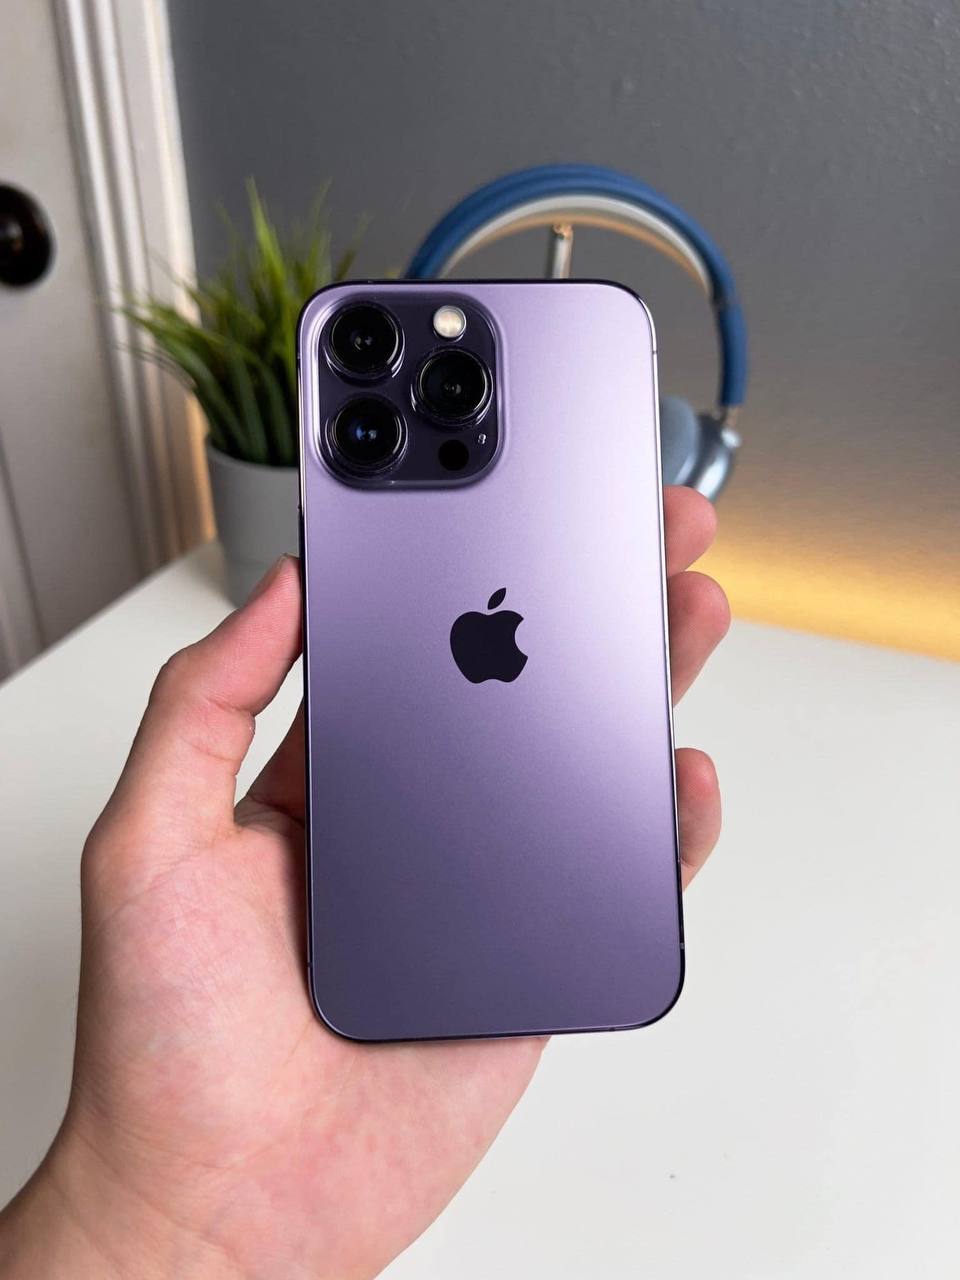 iPhone 14 Pro màu sắc là một lựa chọn không thể sai khi bạn muốn sở hữu một chiếc điện thoại đẳng cấp và thông minh. Màu sắc tinh tế và những tính năng nổi bật trên iPhone 14 Pro sẽ làm hài lòng cả người dùng khó tính nhất. Hãy lựa chọn màu sắc yêu thích của bạn và tận hưởng trải nghiệm tuyệt vời cùng iPhone 14 Pro.